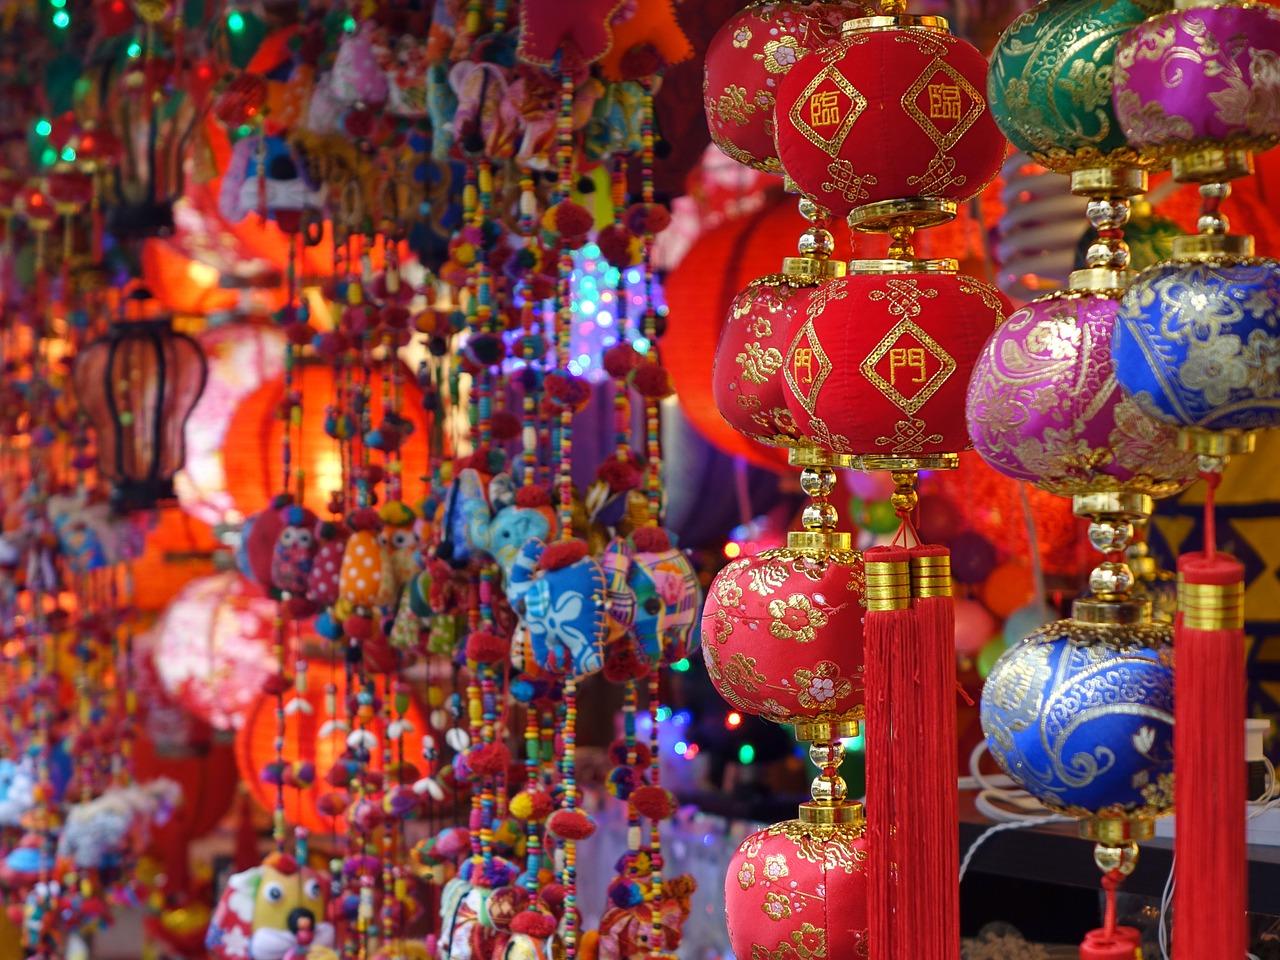 Lanterns hanging in a market